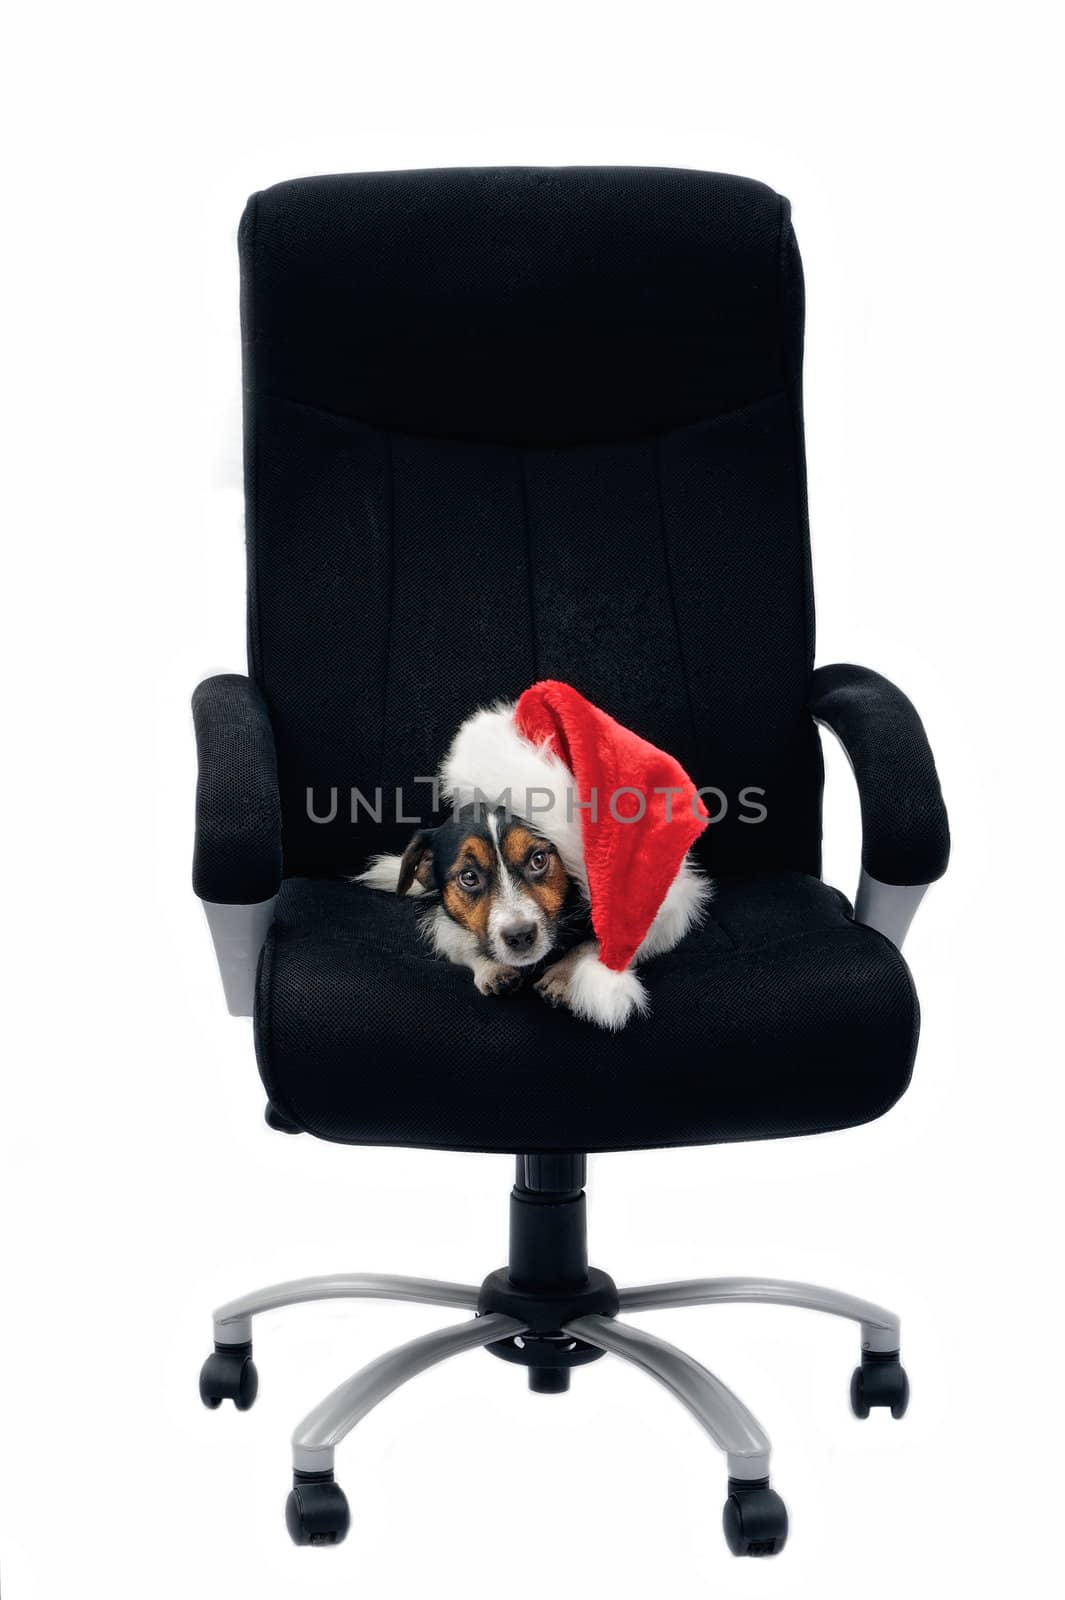 In boss chair by styf22